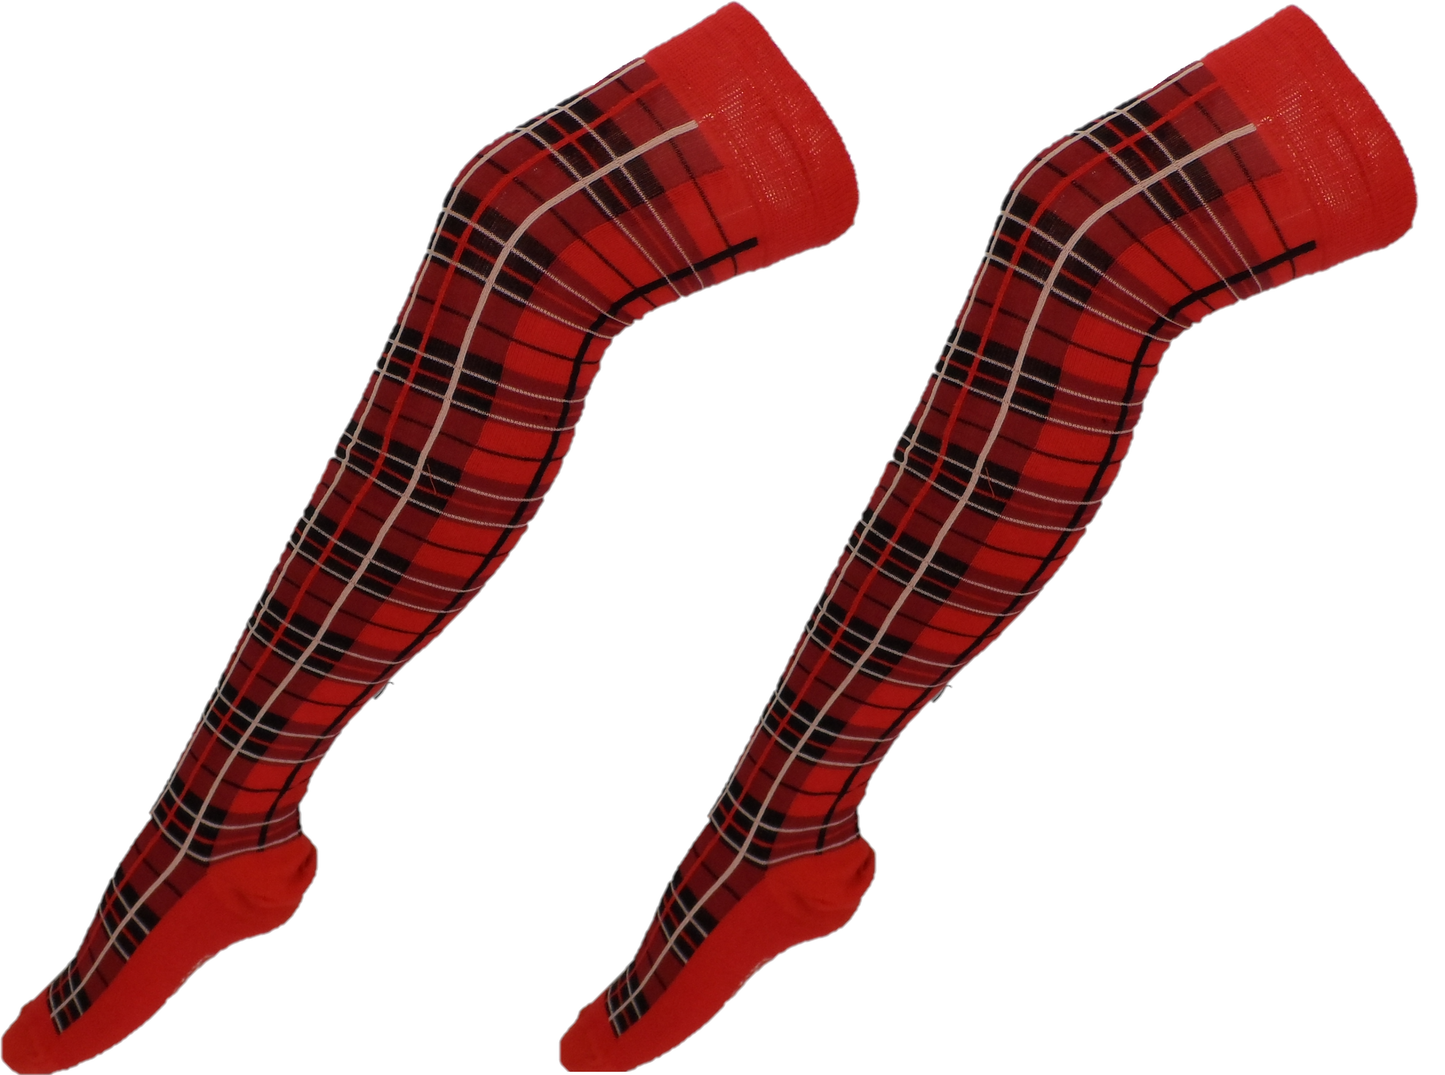 Ladies 2 Pair Pack of Red Tartan Top Over the Knee Socks